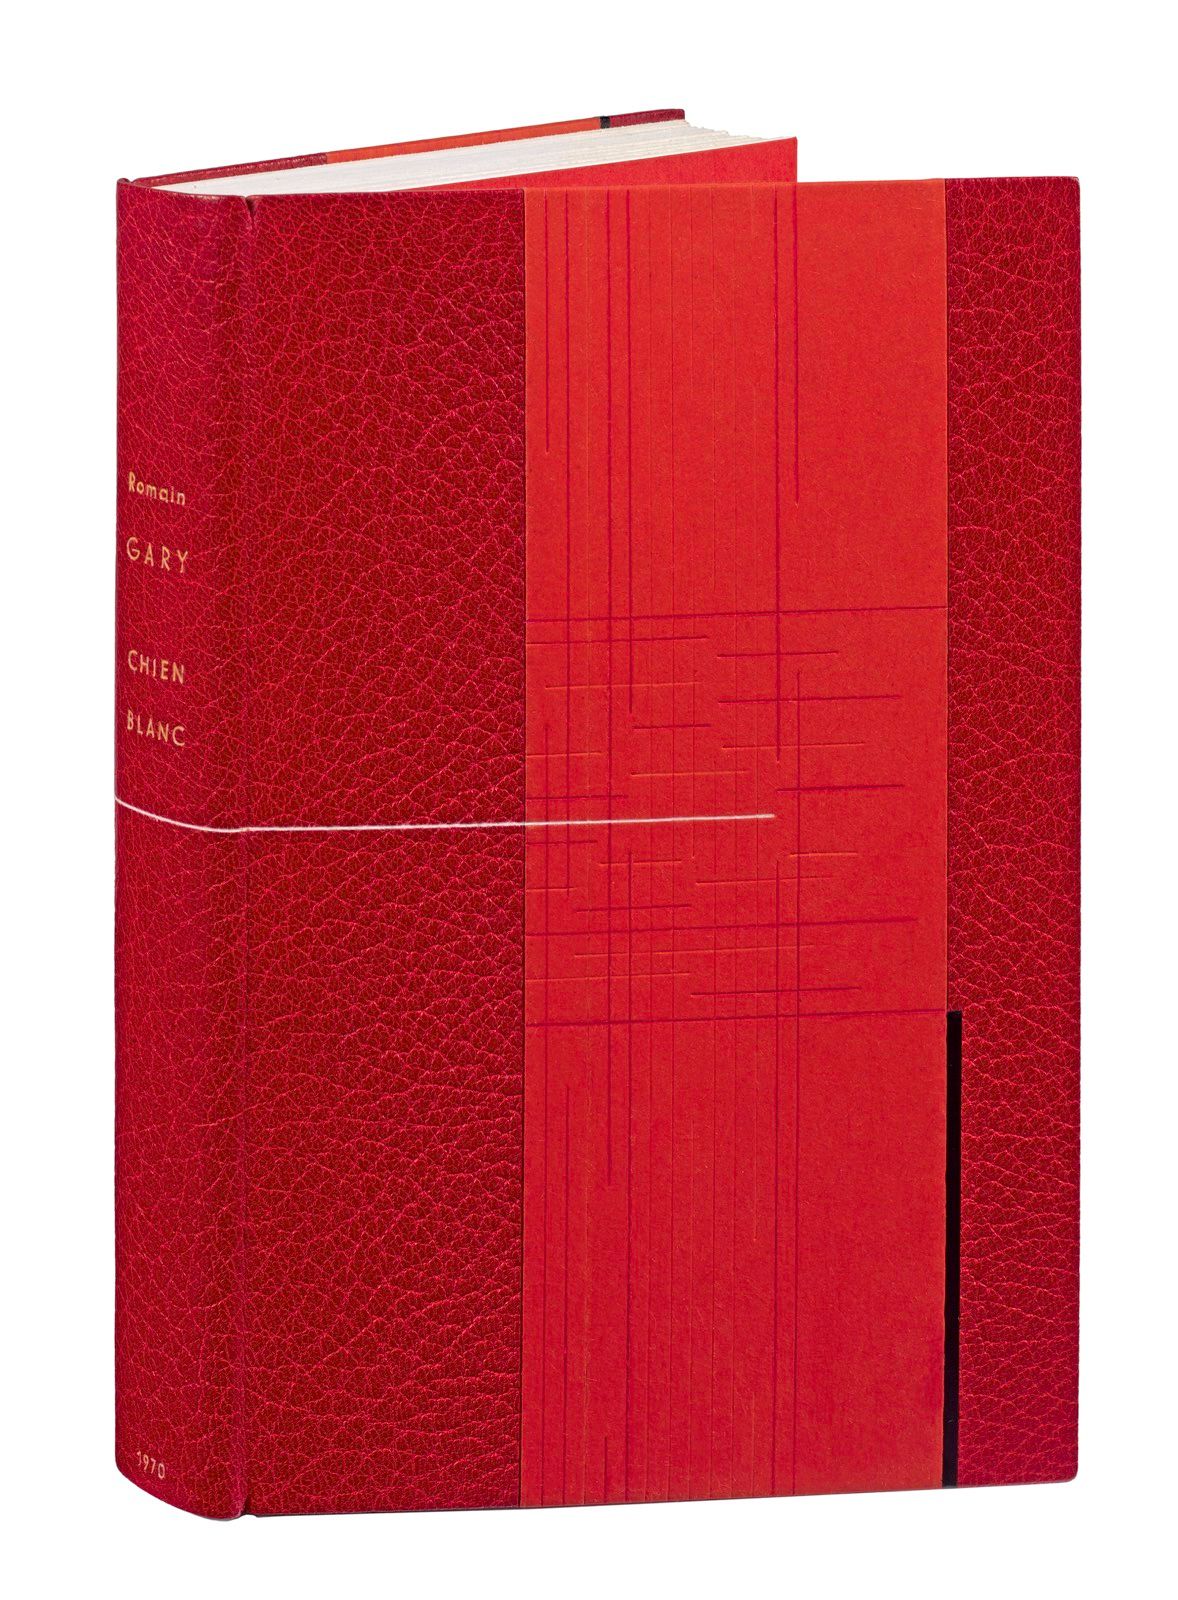 GARY (Romain). Cane bianco. Parigi, Gallimard, 1970. In-8, mezzo marocchino ross&hellip;